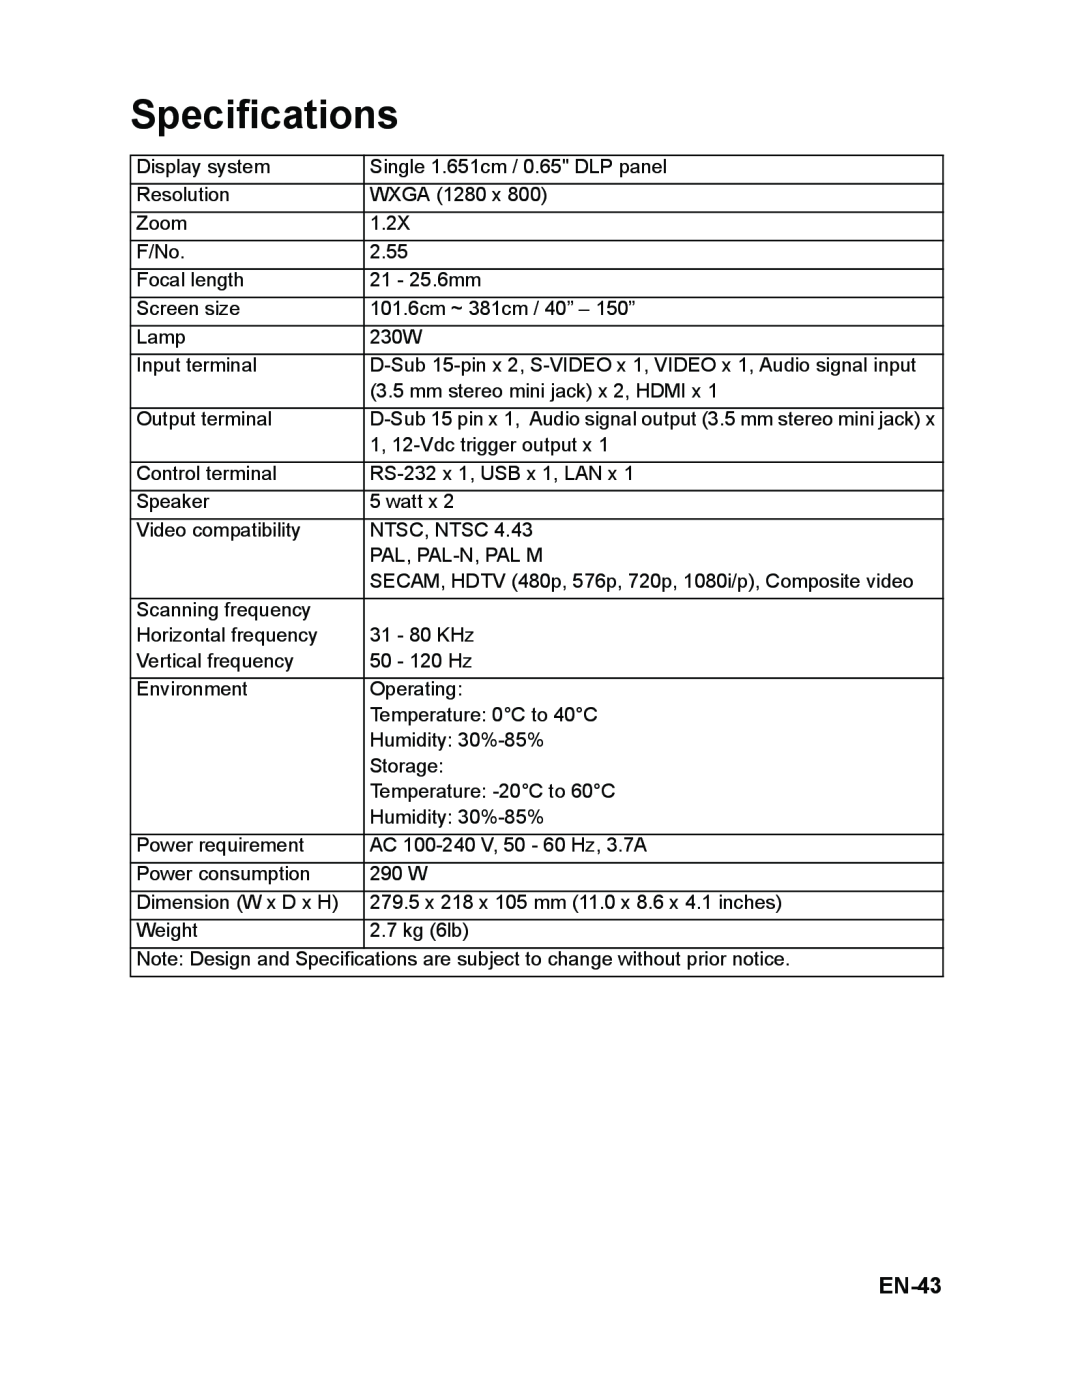 ViewSonic VS12476 warranty Specifications, EN-43 